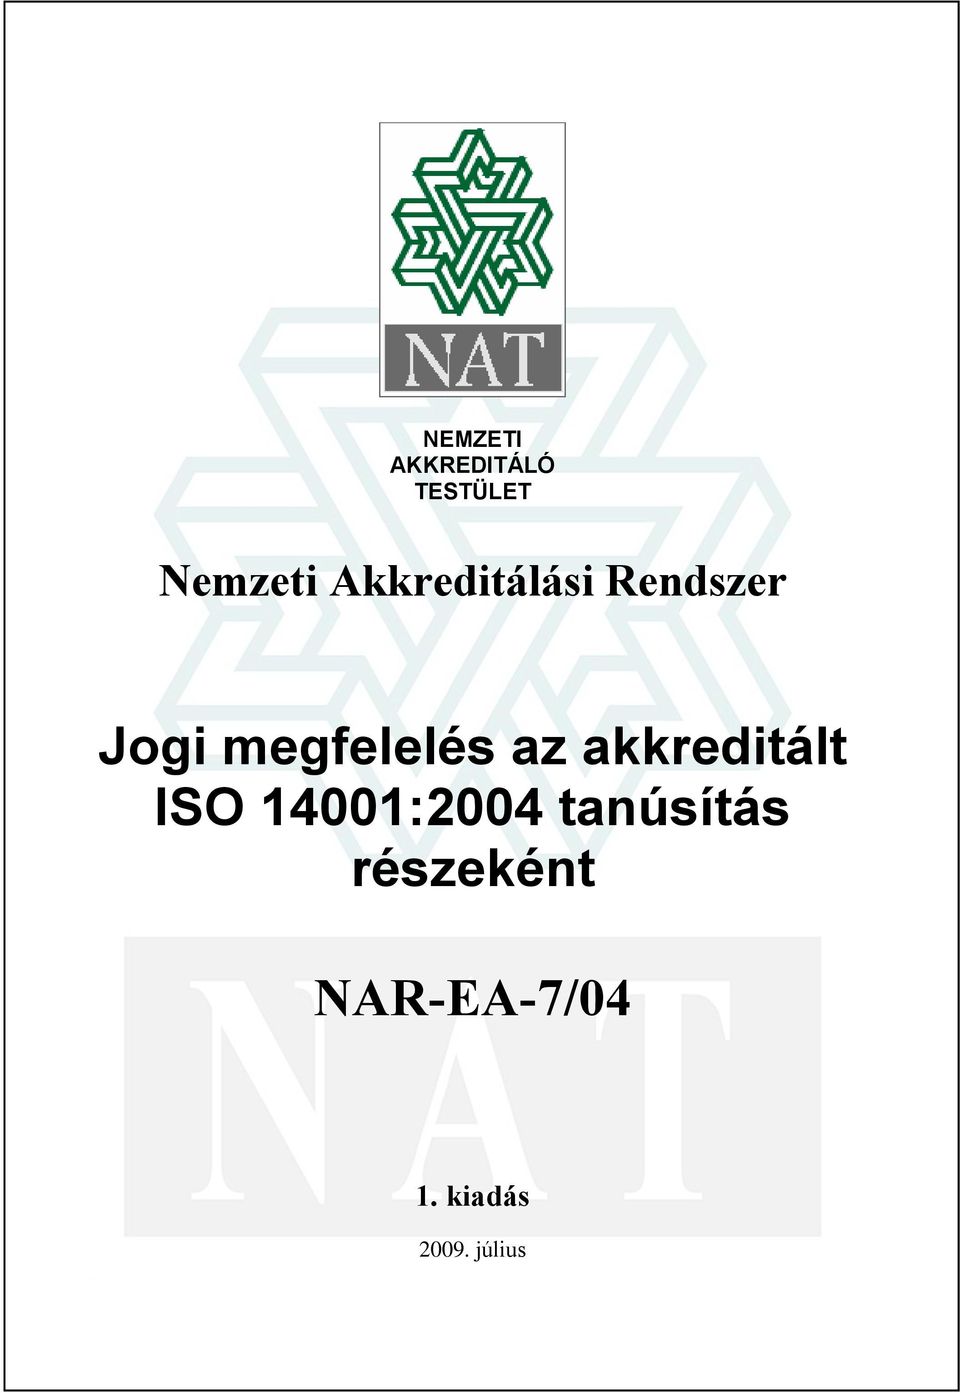 az akkreditált ISO 14001:2004 tanúsítás